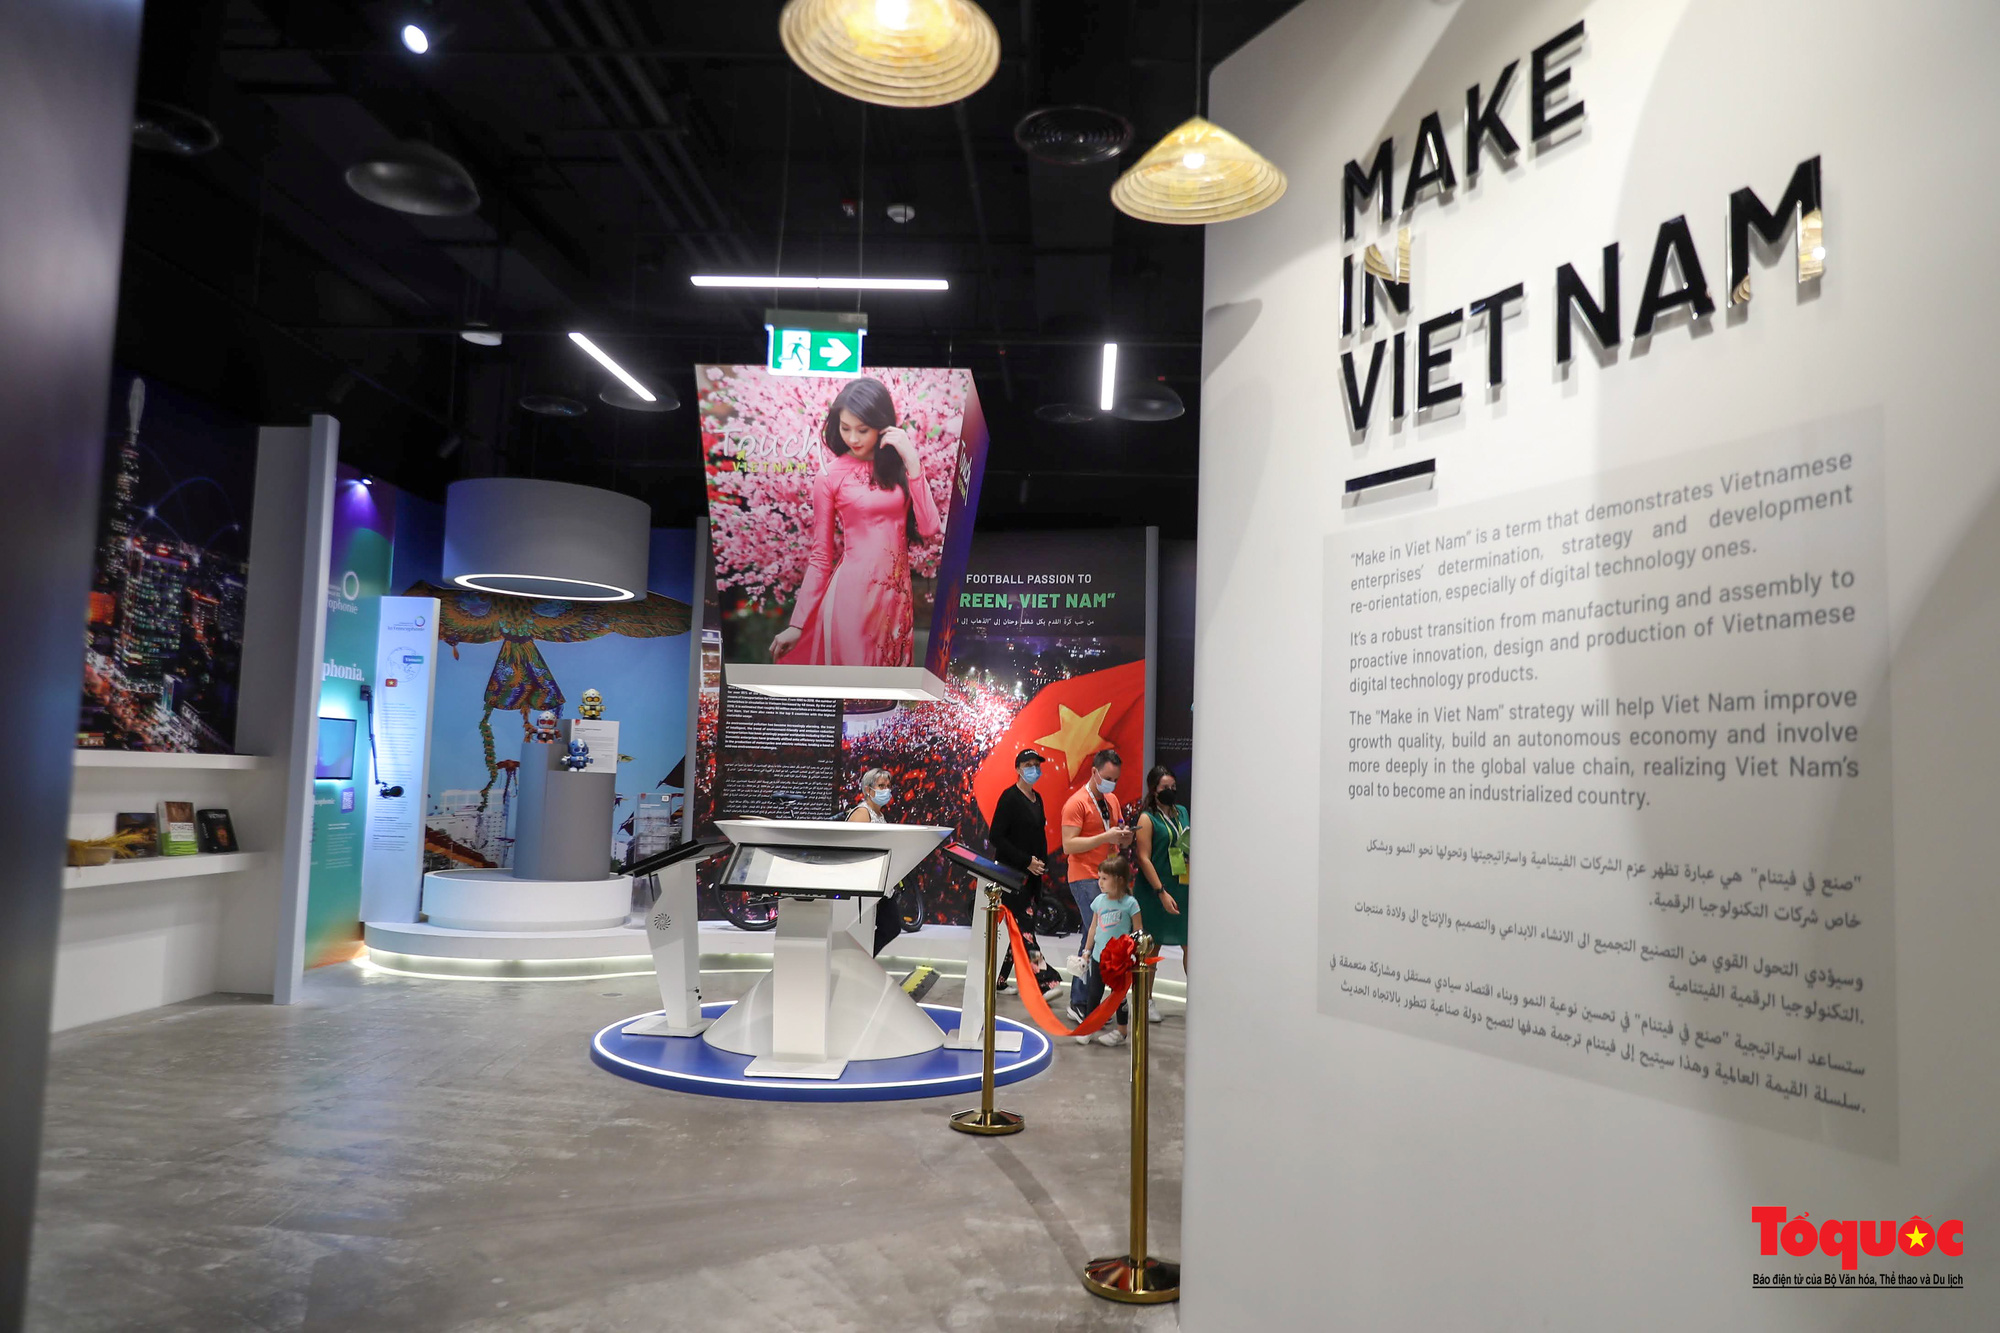 Nhà Triển lãm Việt Nam “ngôi sao sáng” tại EXPO 2020 Dubai - Ảnh 3.